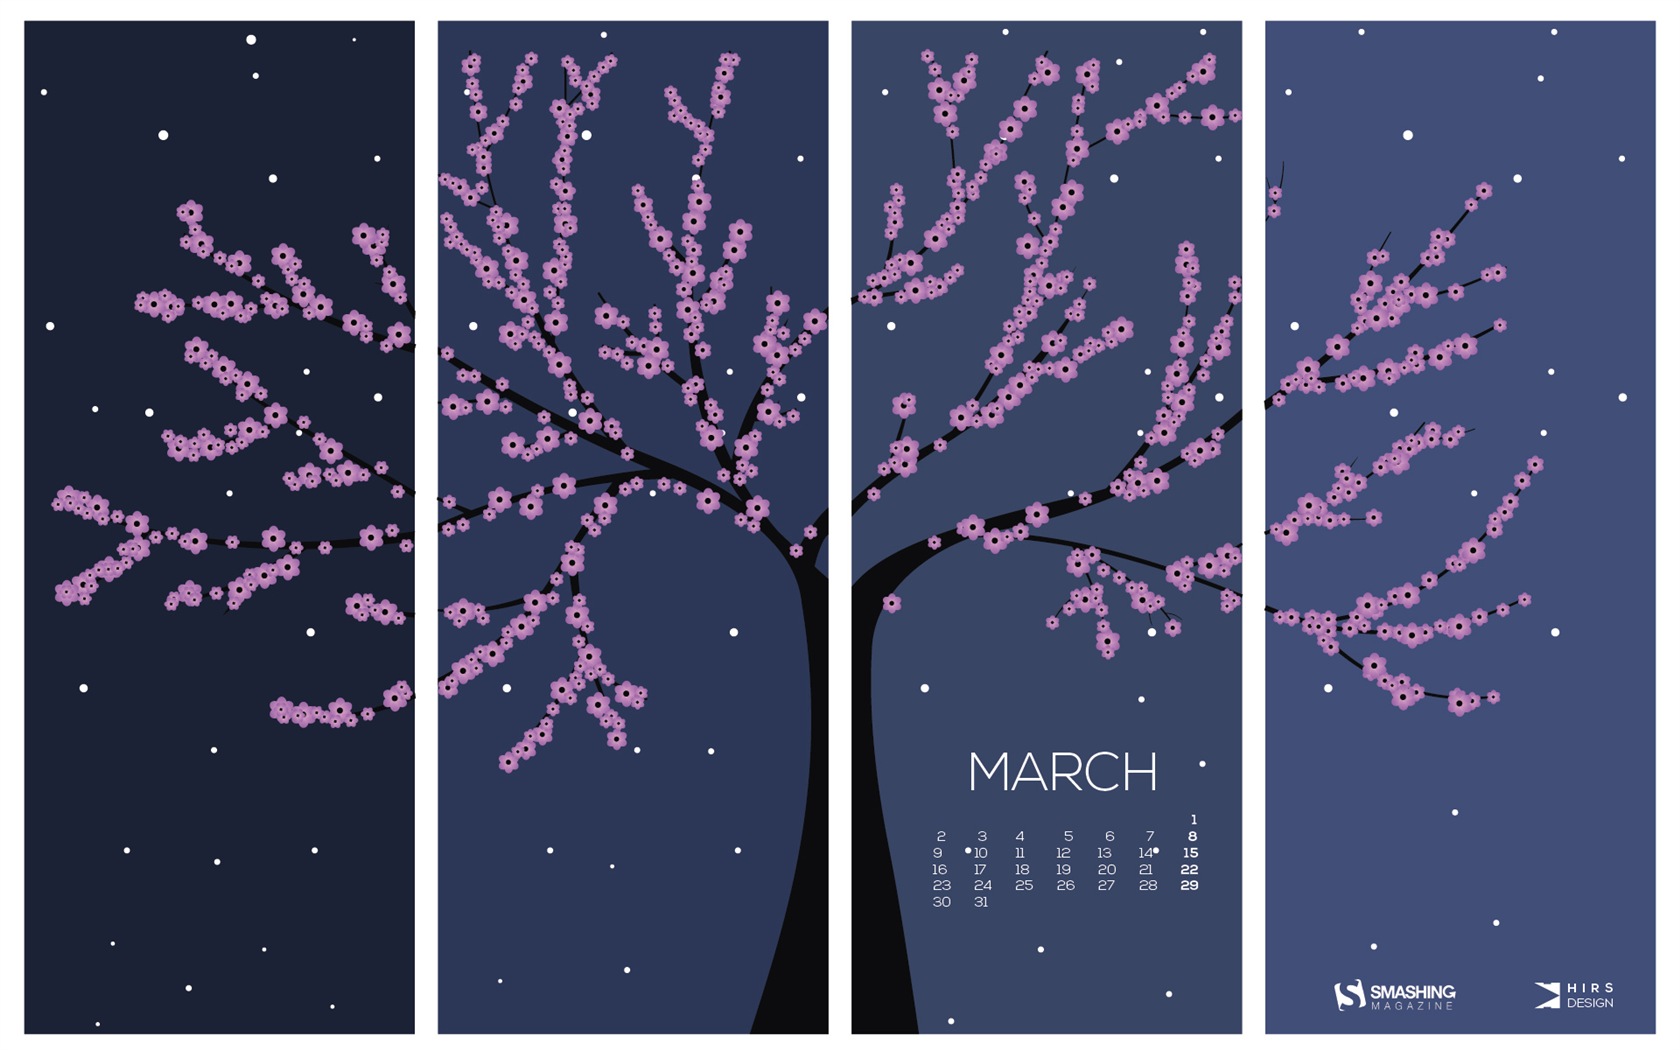 March 2015 Calendar wallpaper (2) #15 - 1680x1050